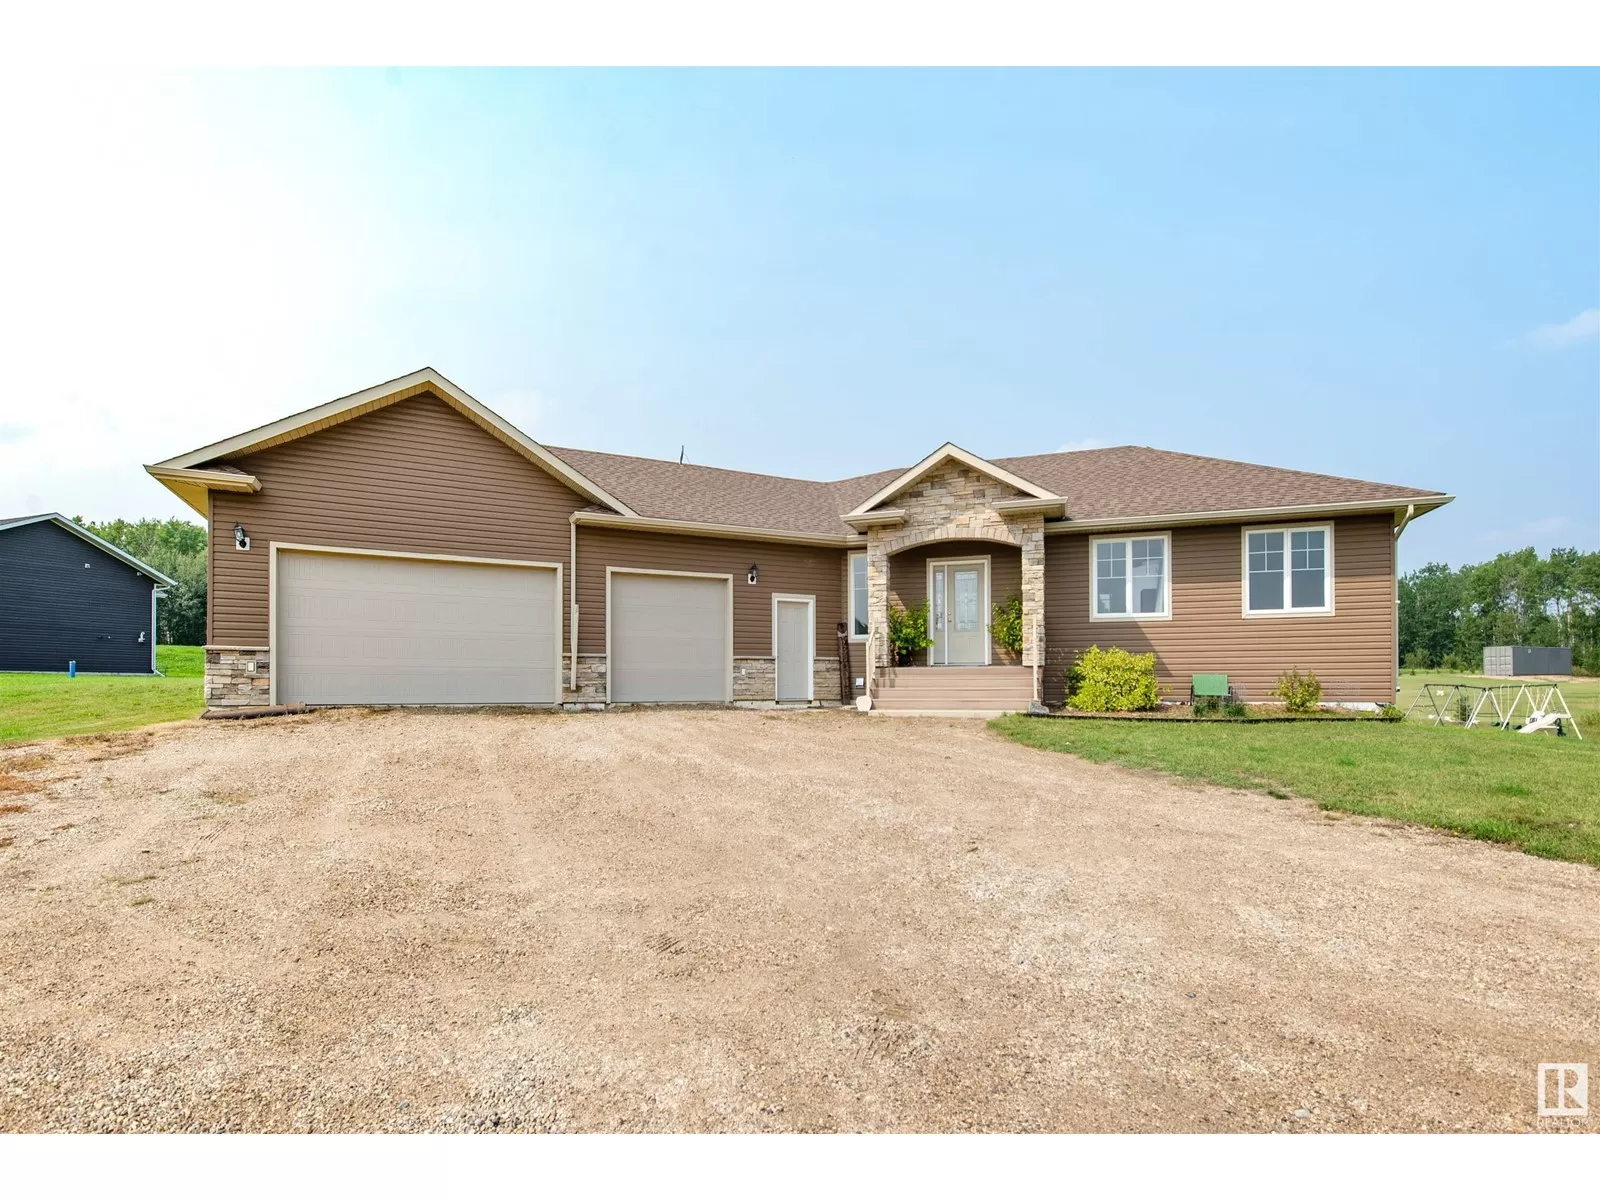 House for rent: 38 61119 Range Road 465, Rural Bonnyville M.D., Alberta T9N 2G6